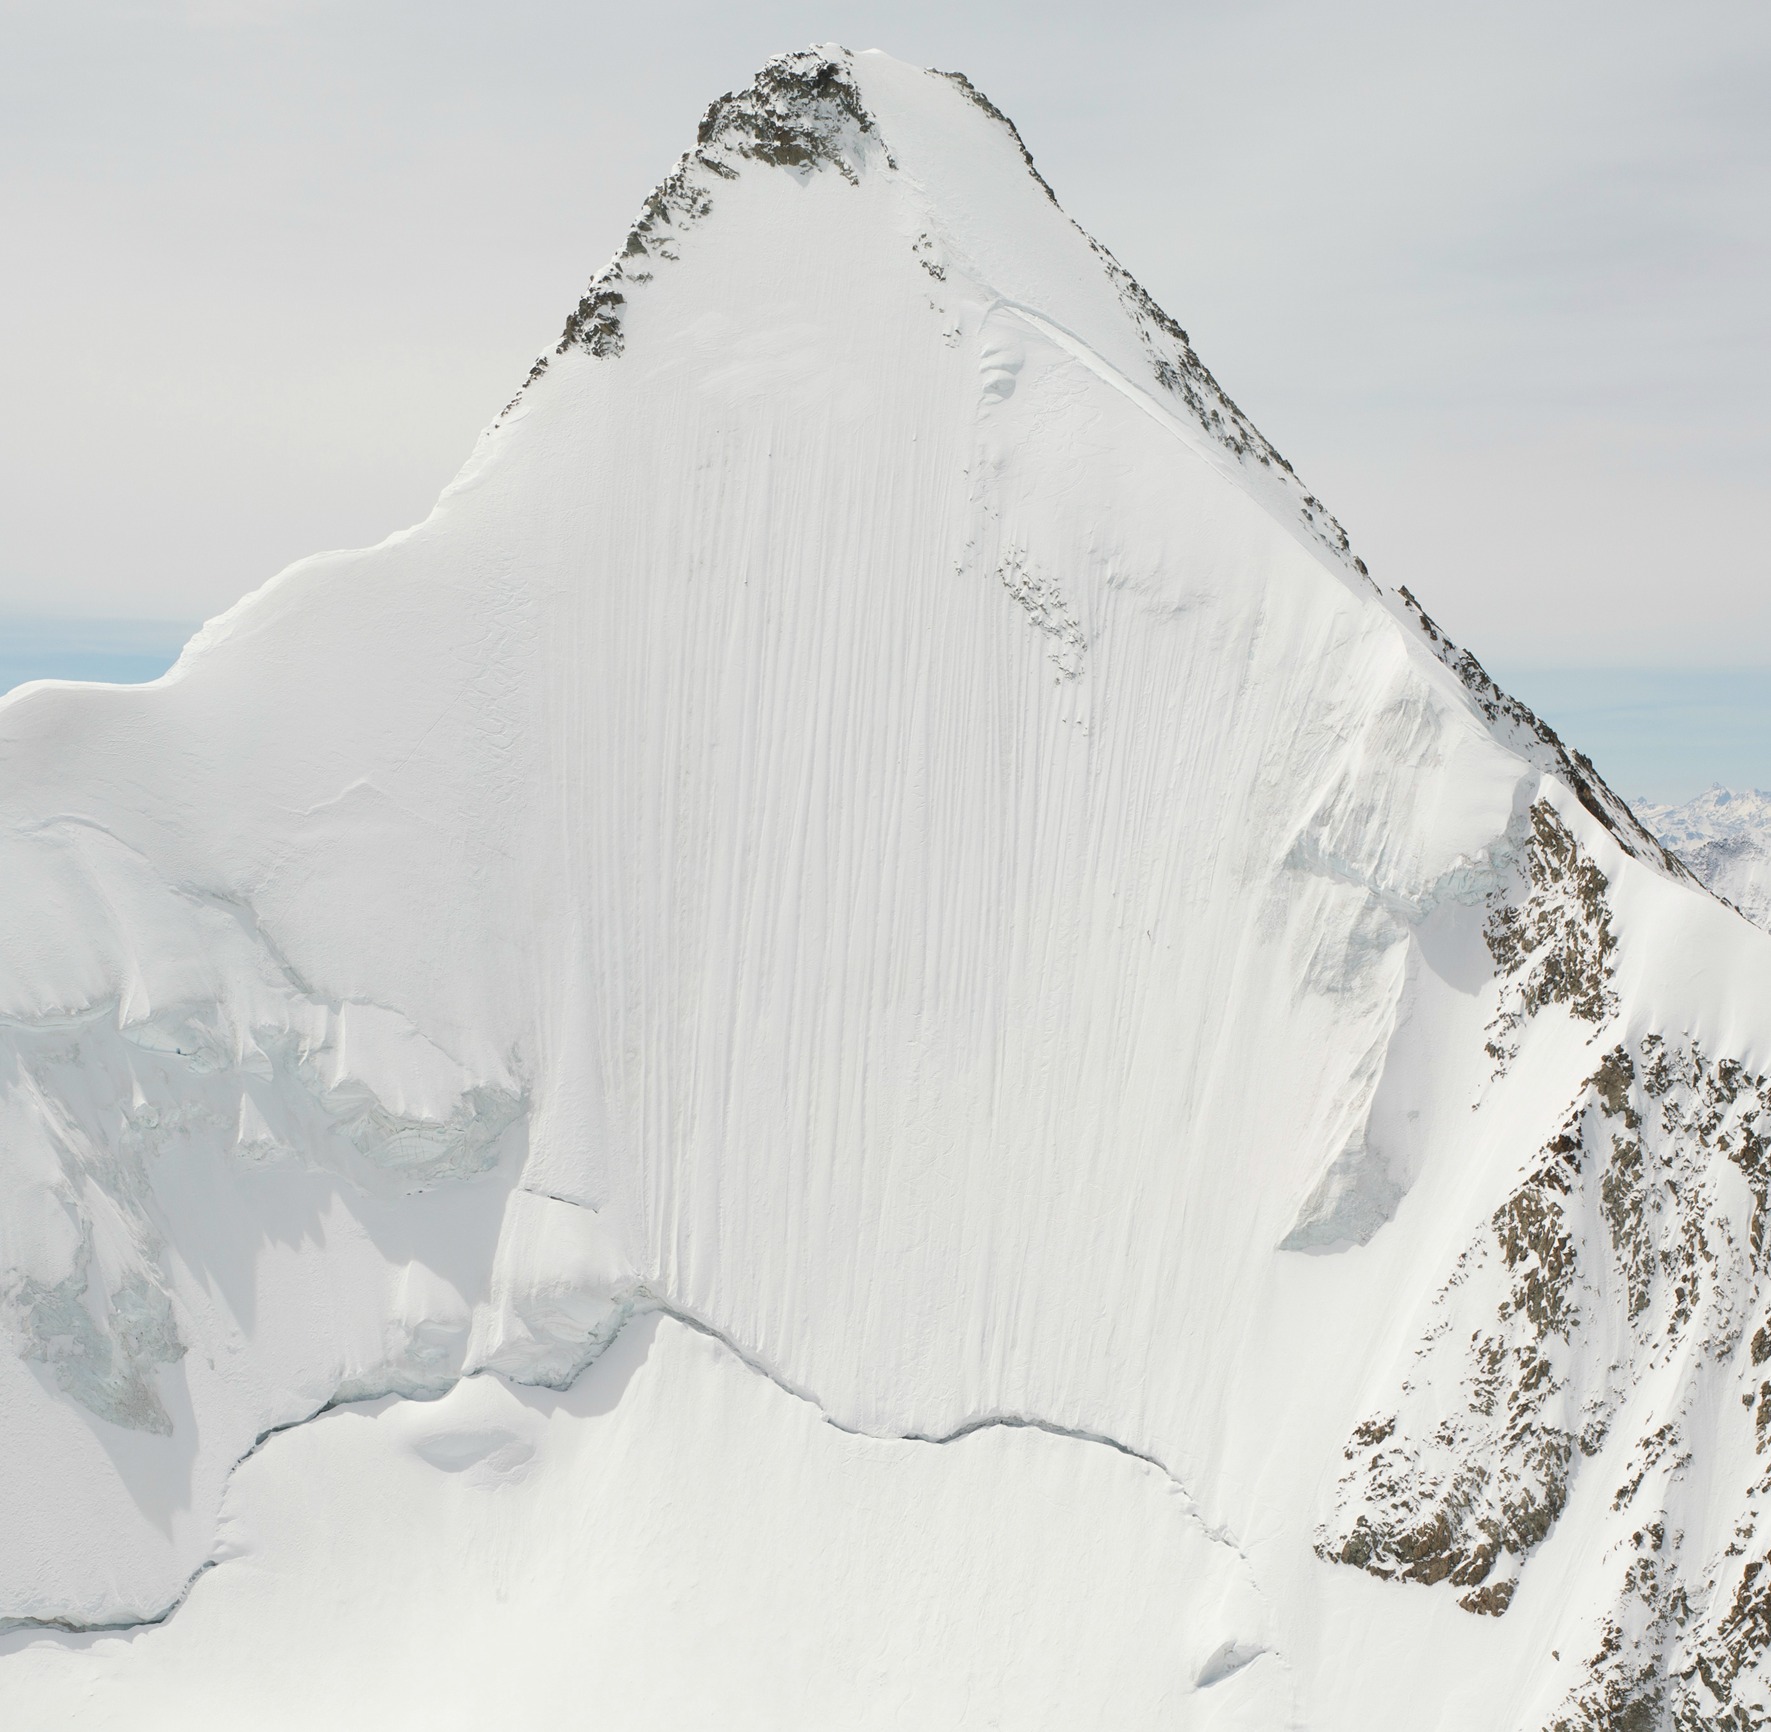 А это сам пик Обер-Габельхорн, Пеннинские Альпы, высота – 4063 метра (hebdo.ch)